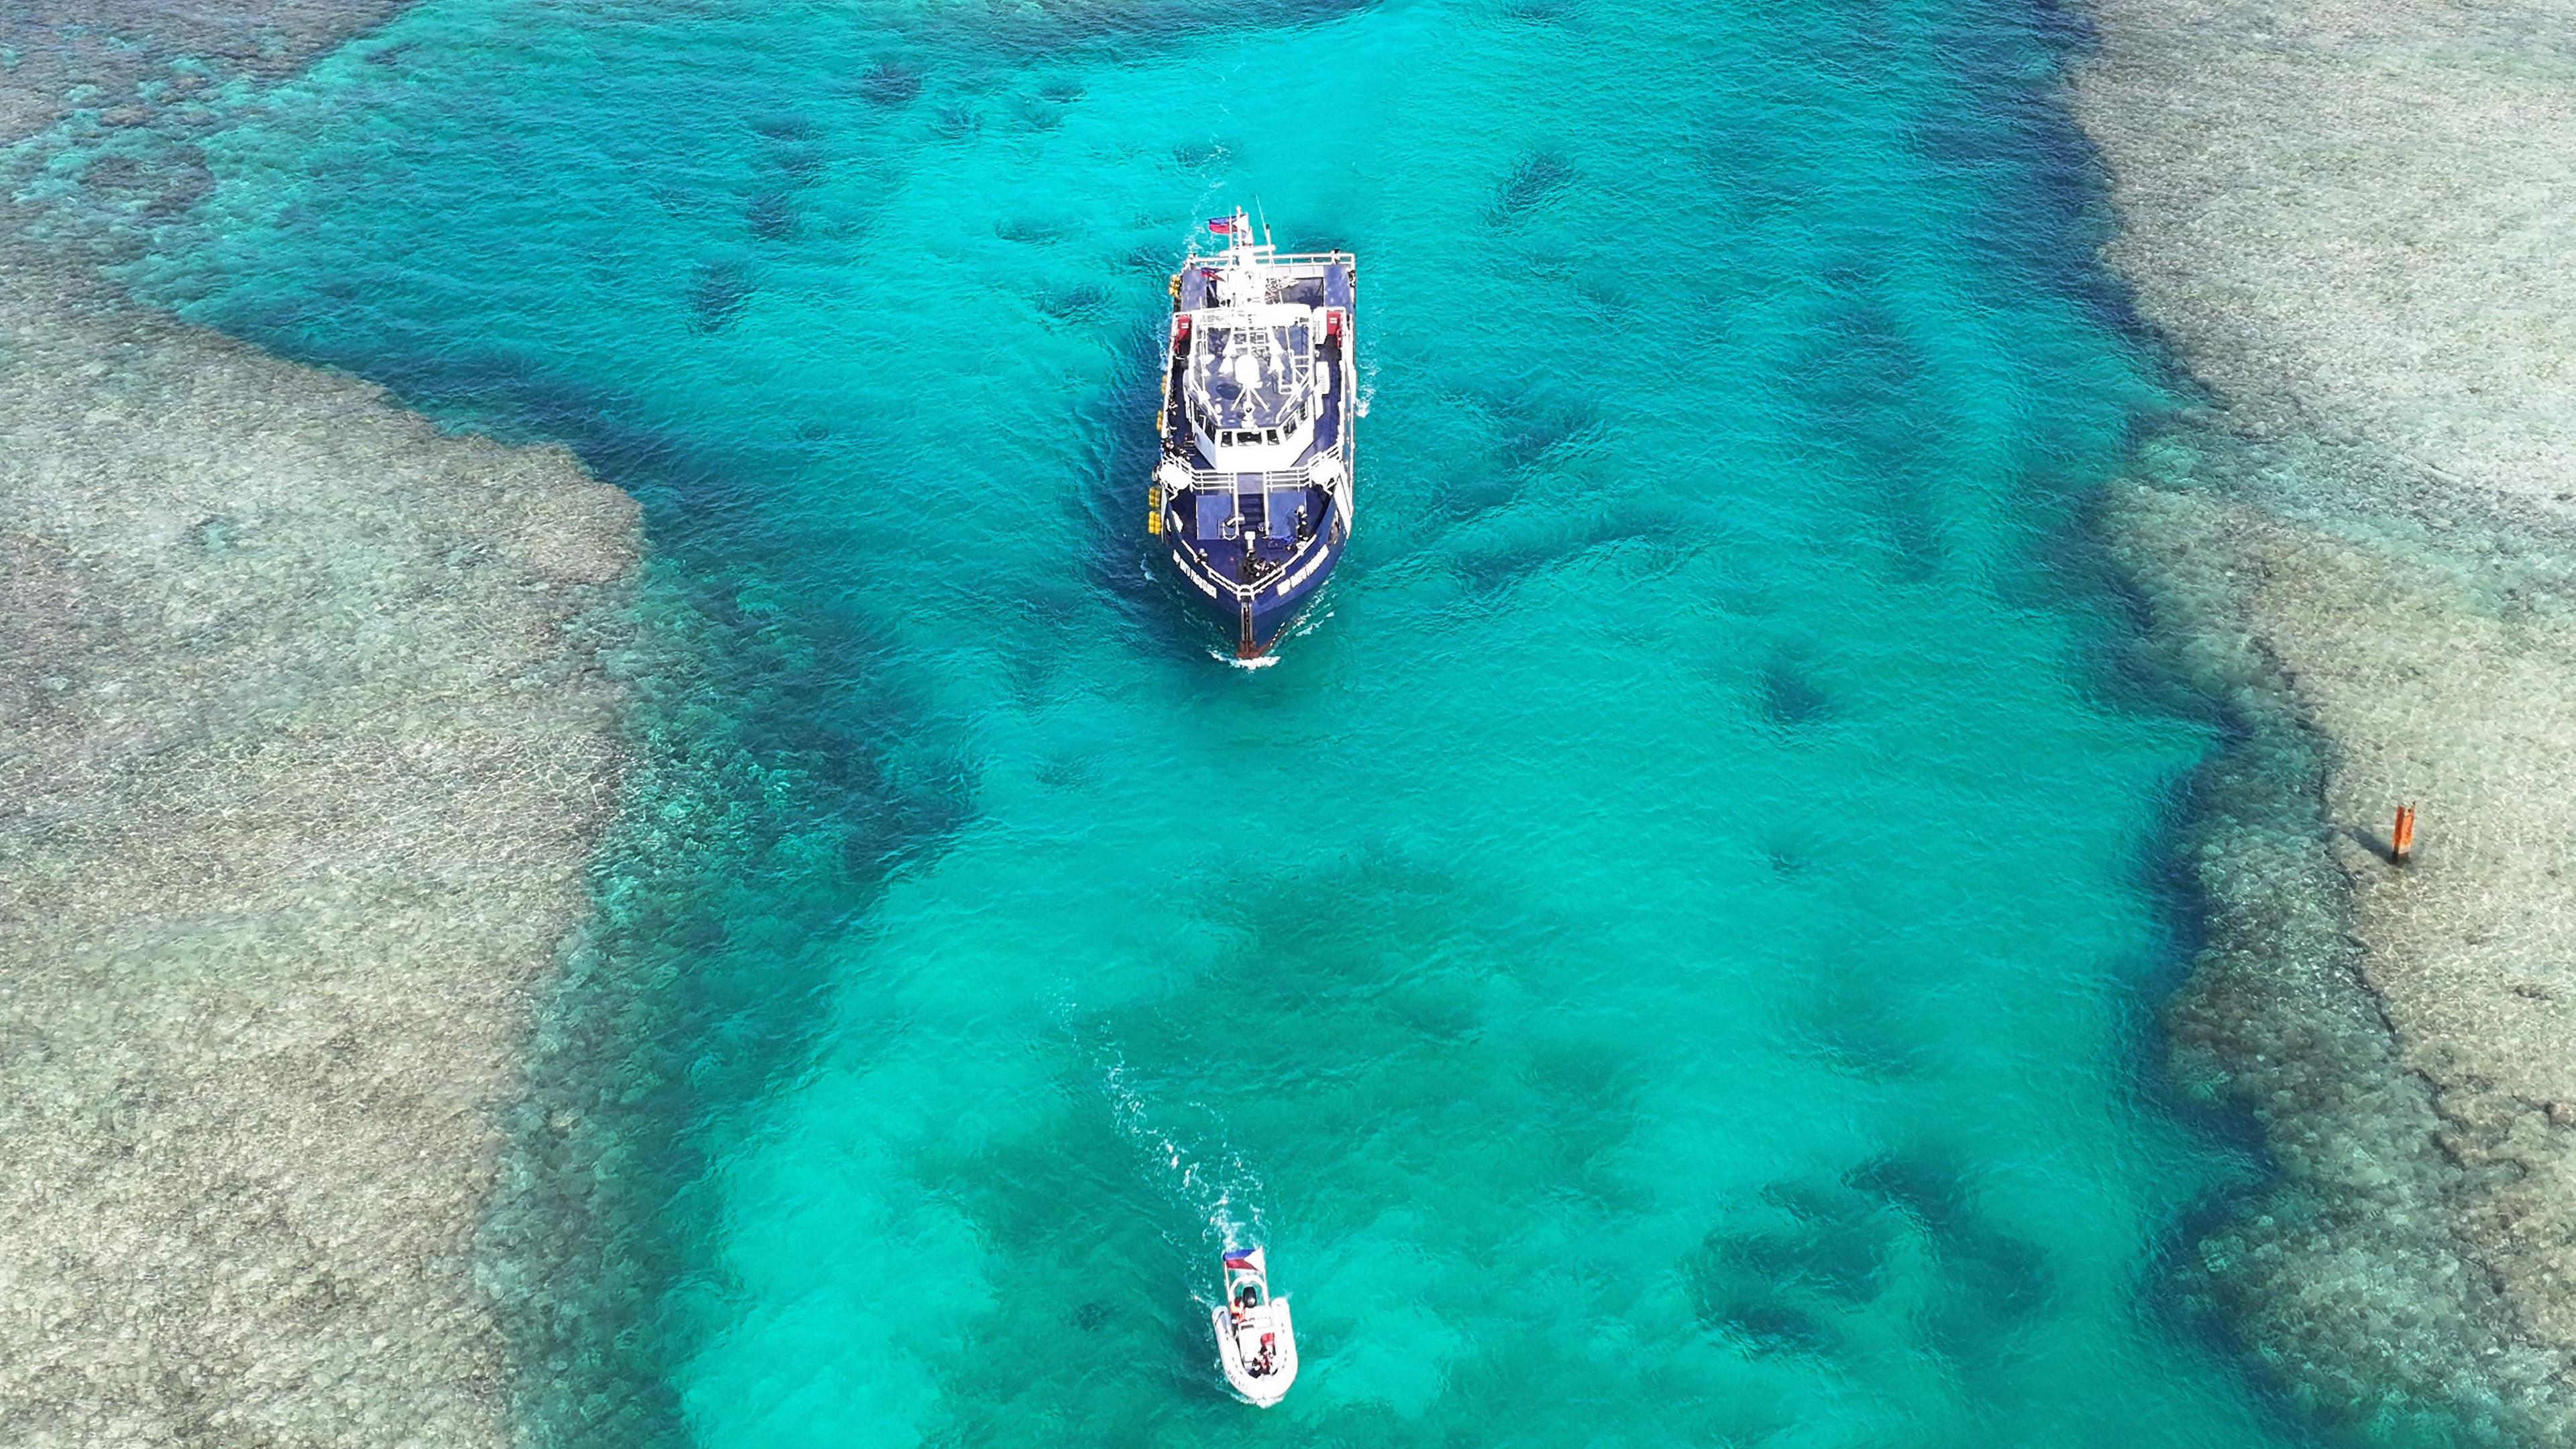 Zwei Schiffe auf türkisfarbenem Wasser.